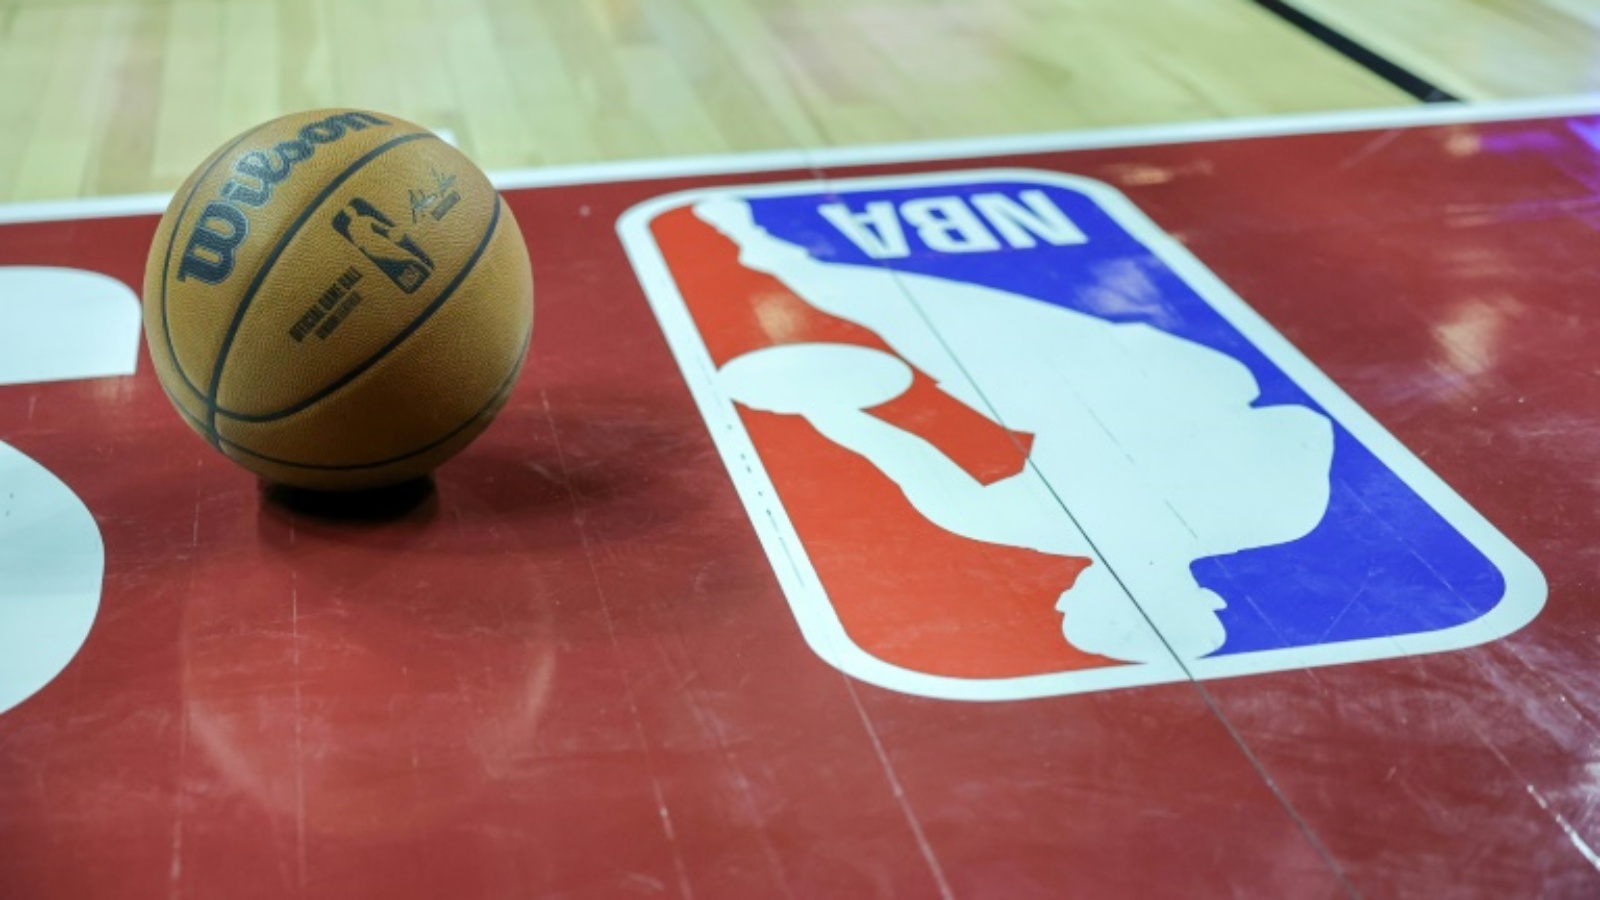 رابطة دوري كرة السلة الأميركي للمحترفين تطلق النسخة الاولى من مسابقة الكأس خلال الموسم المنتظم